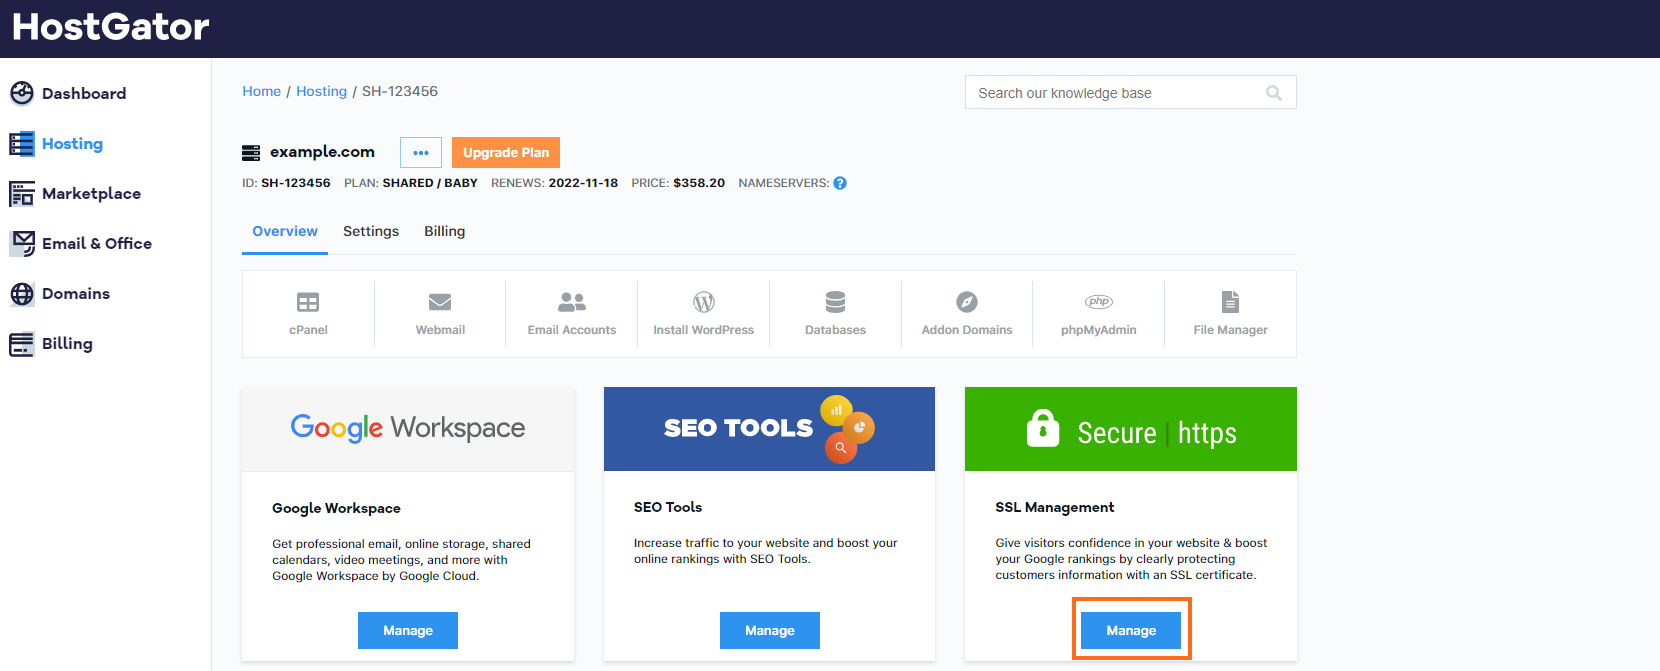 HostGator Portal v2 SSL Management Learn More Button